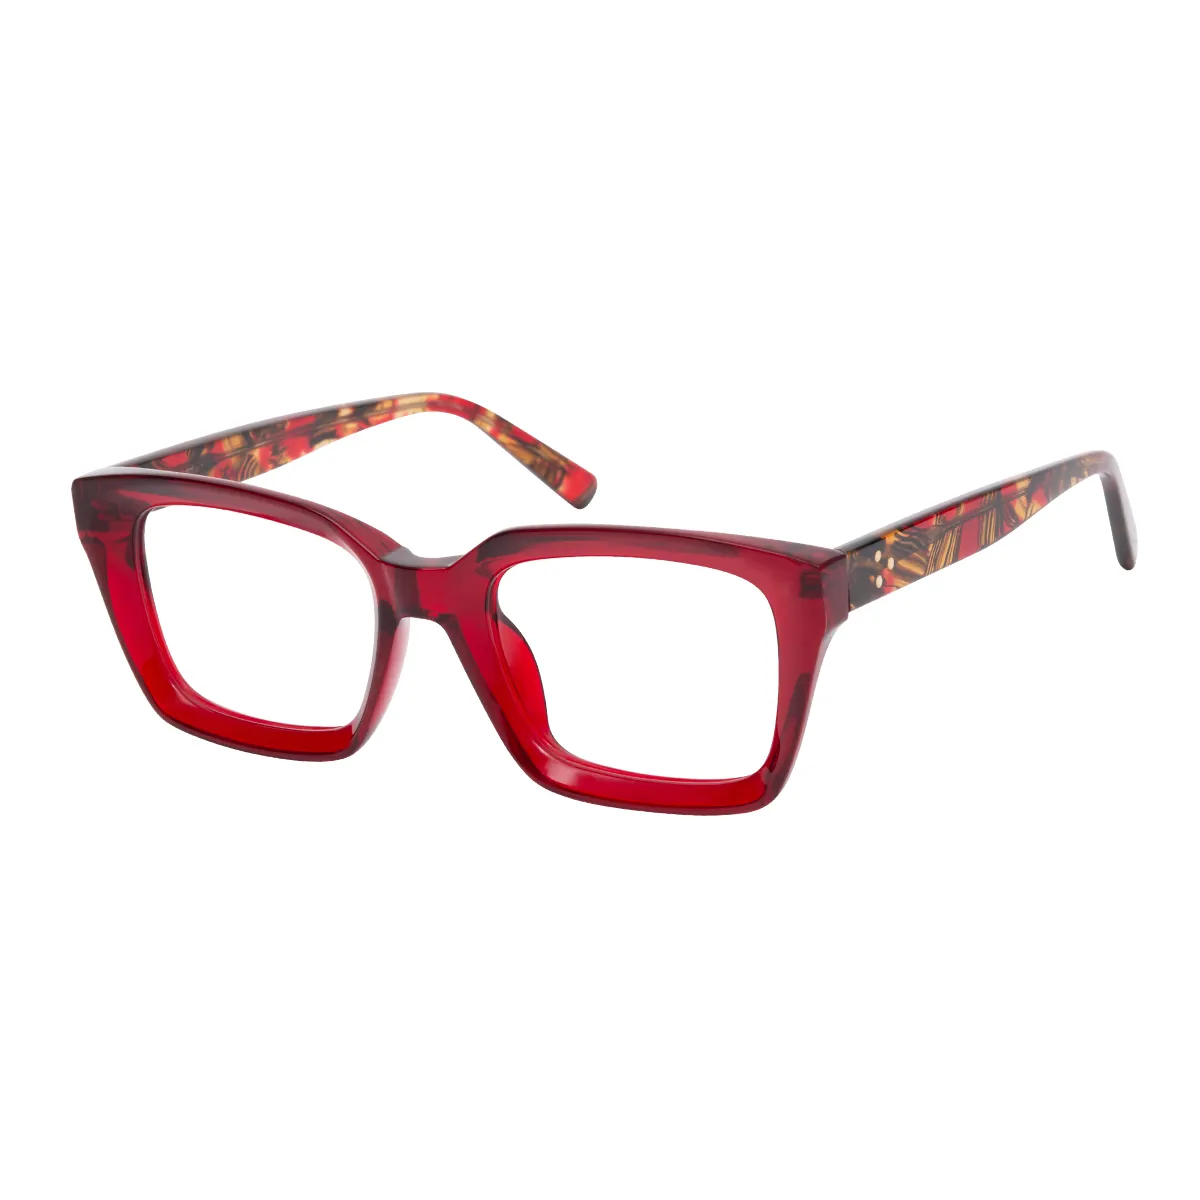 Dario - Square Red Glasses for Women